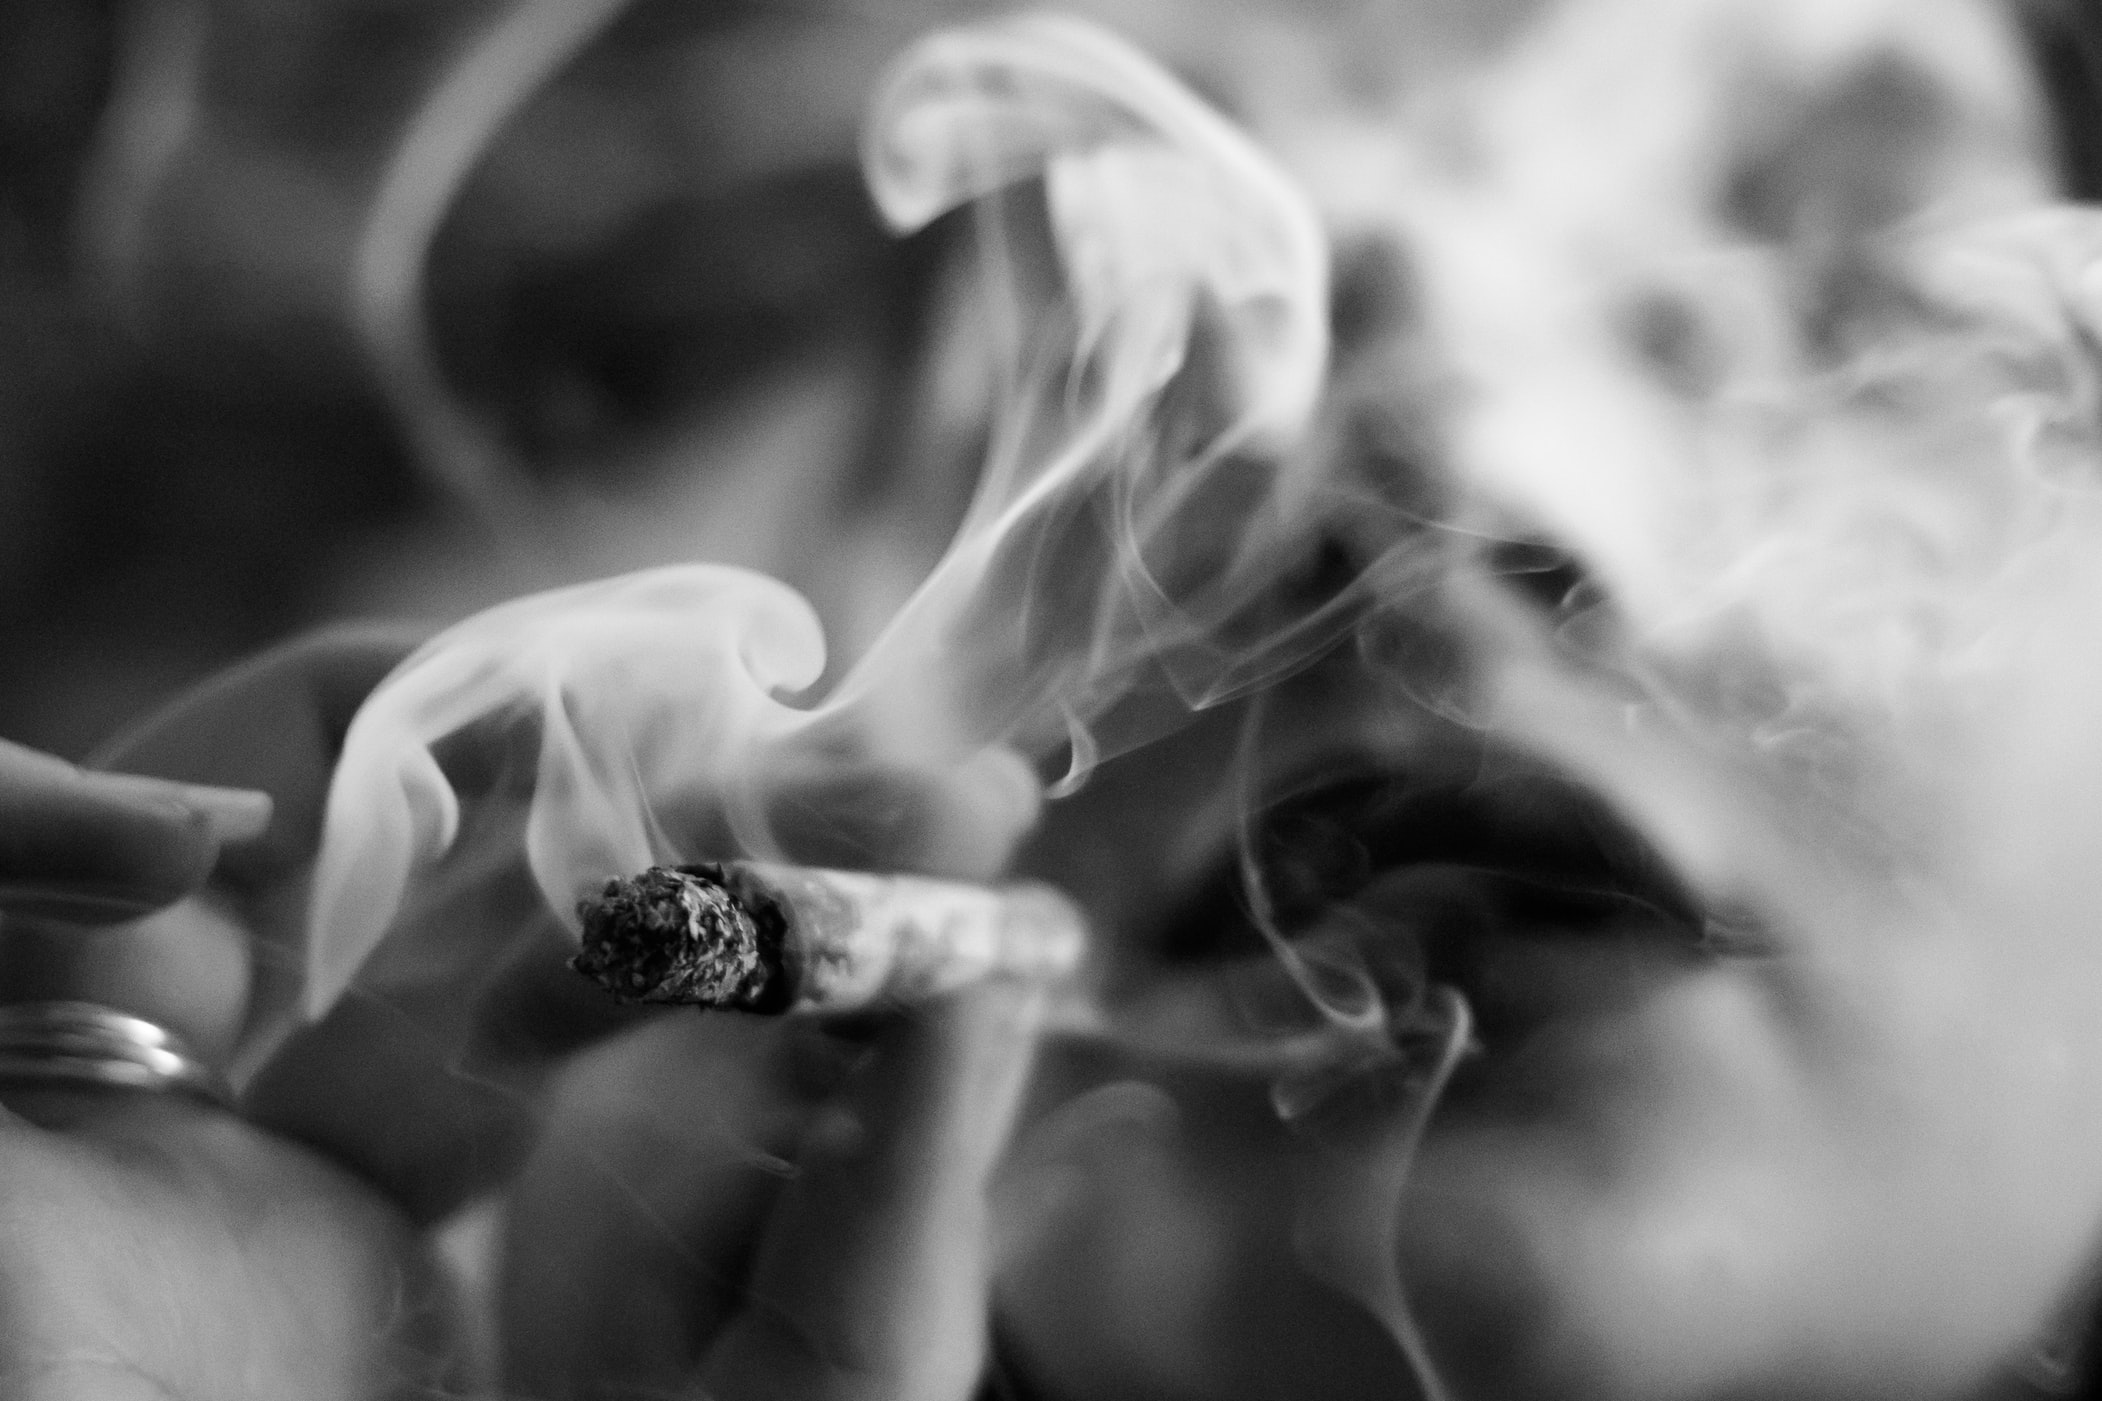 ¿Fumar marihuana es legal en Colombia? Te contamos todo sobre el tema.